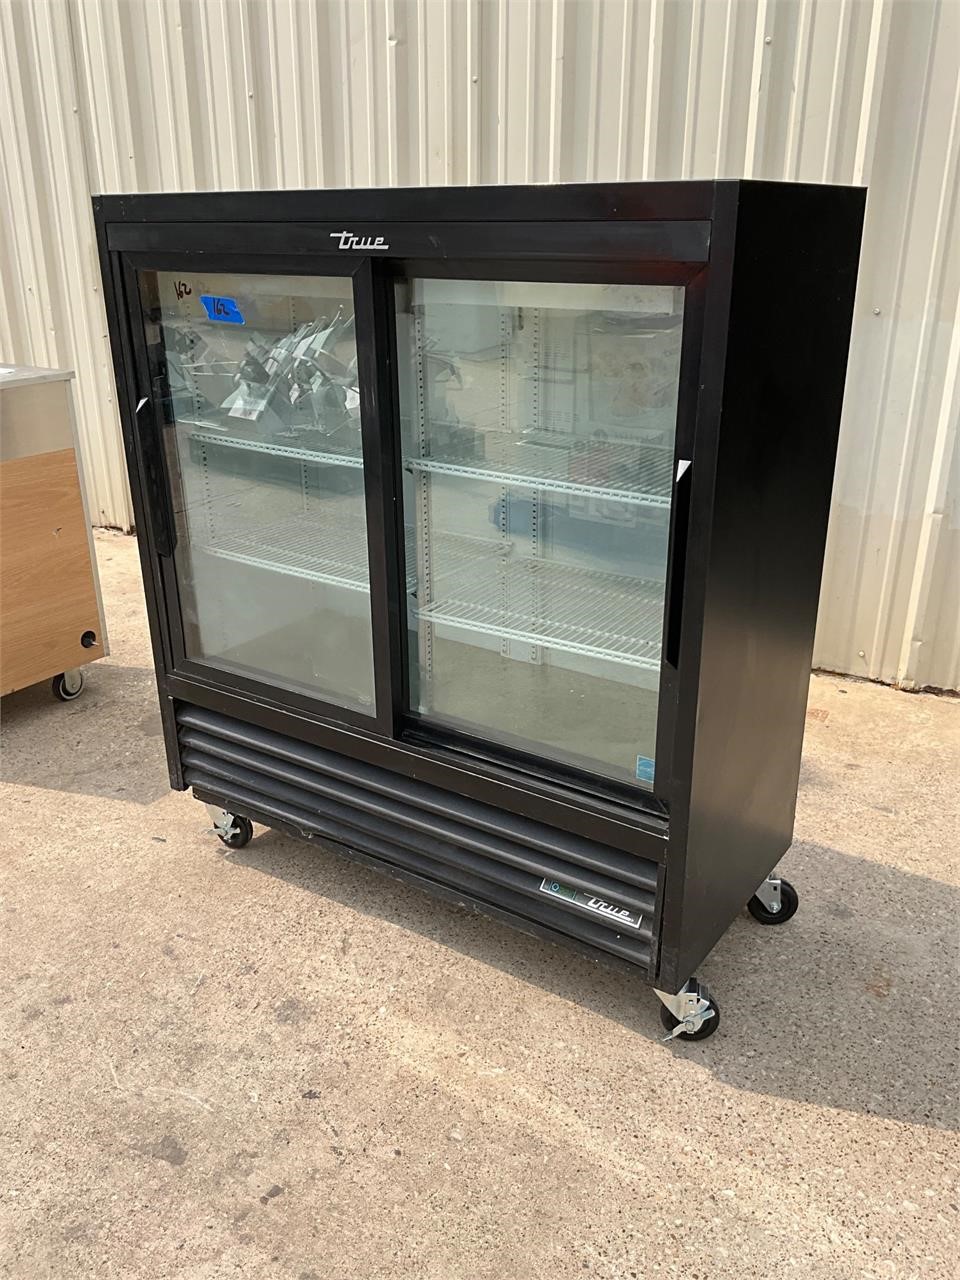 True GDM-41 refrigerator